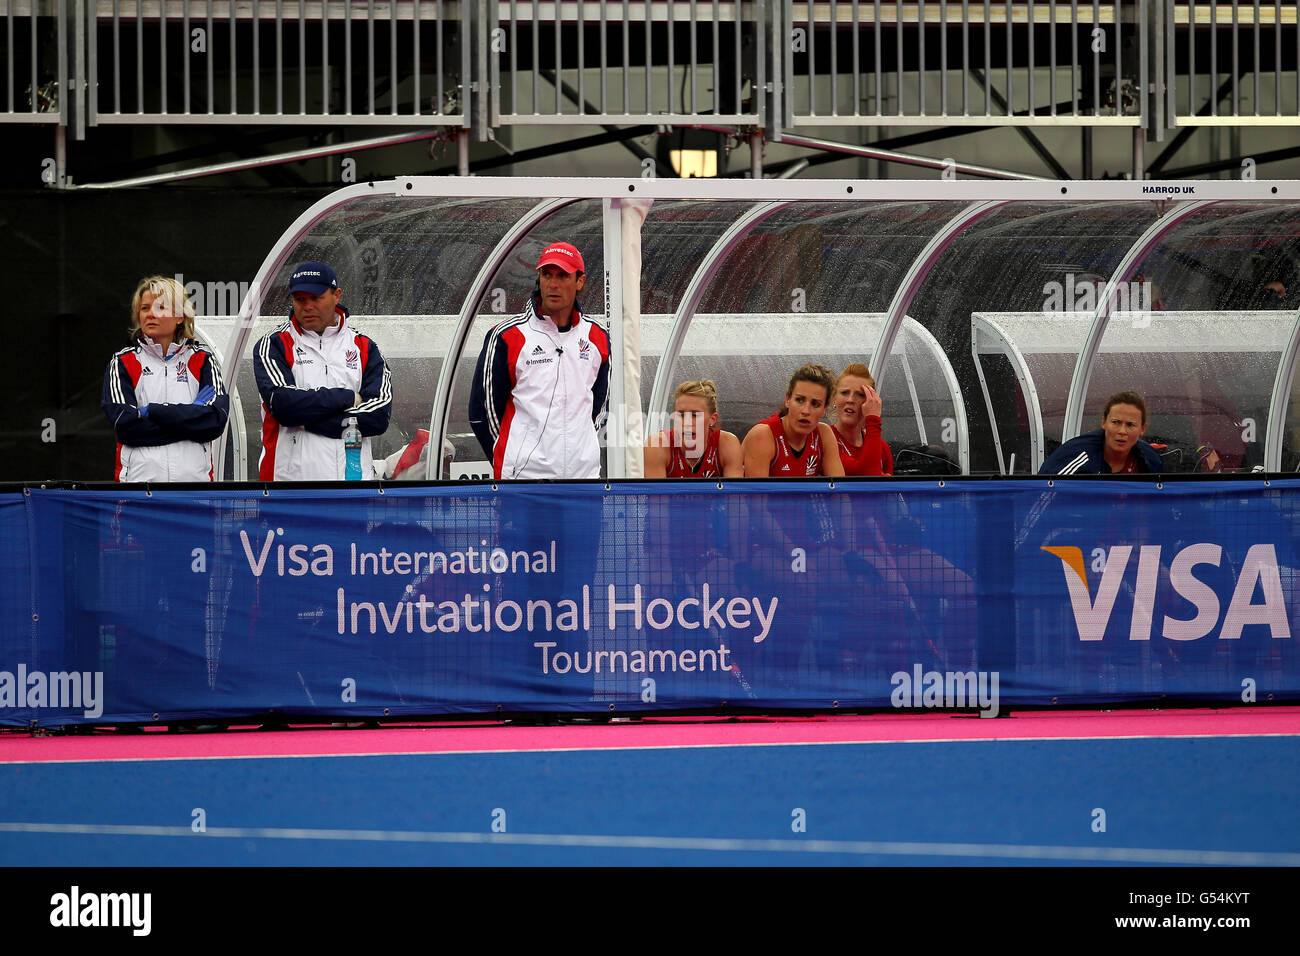 Großbritanniens Bank schaut gegen China während des Visa International Invitational Hockey Tournament in der Riverbank Arena, London. Stockfoto